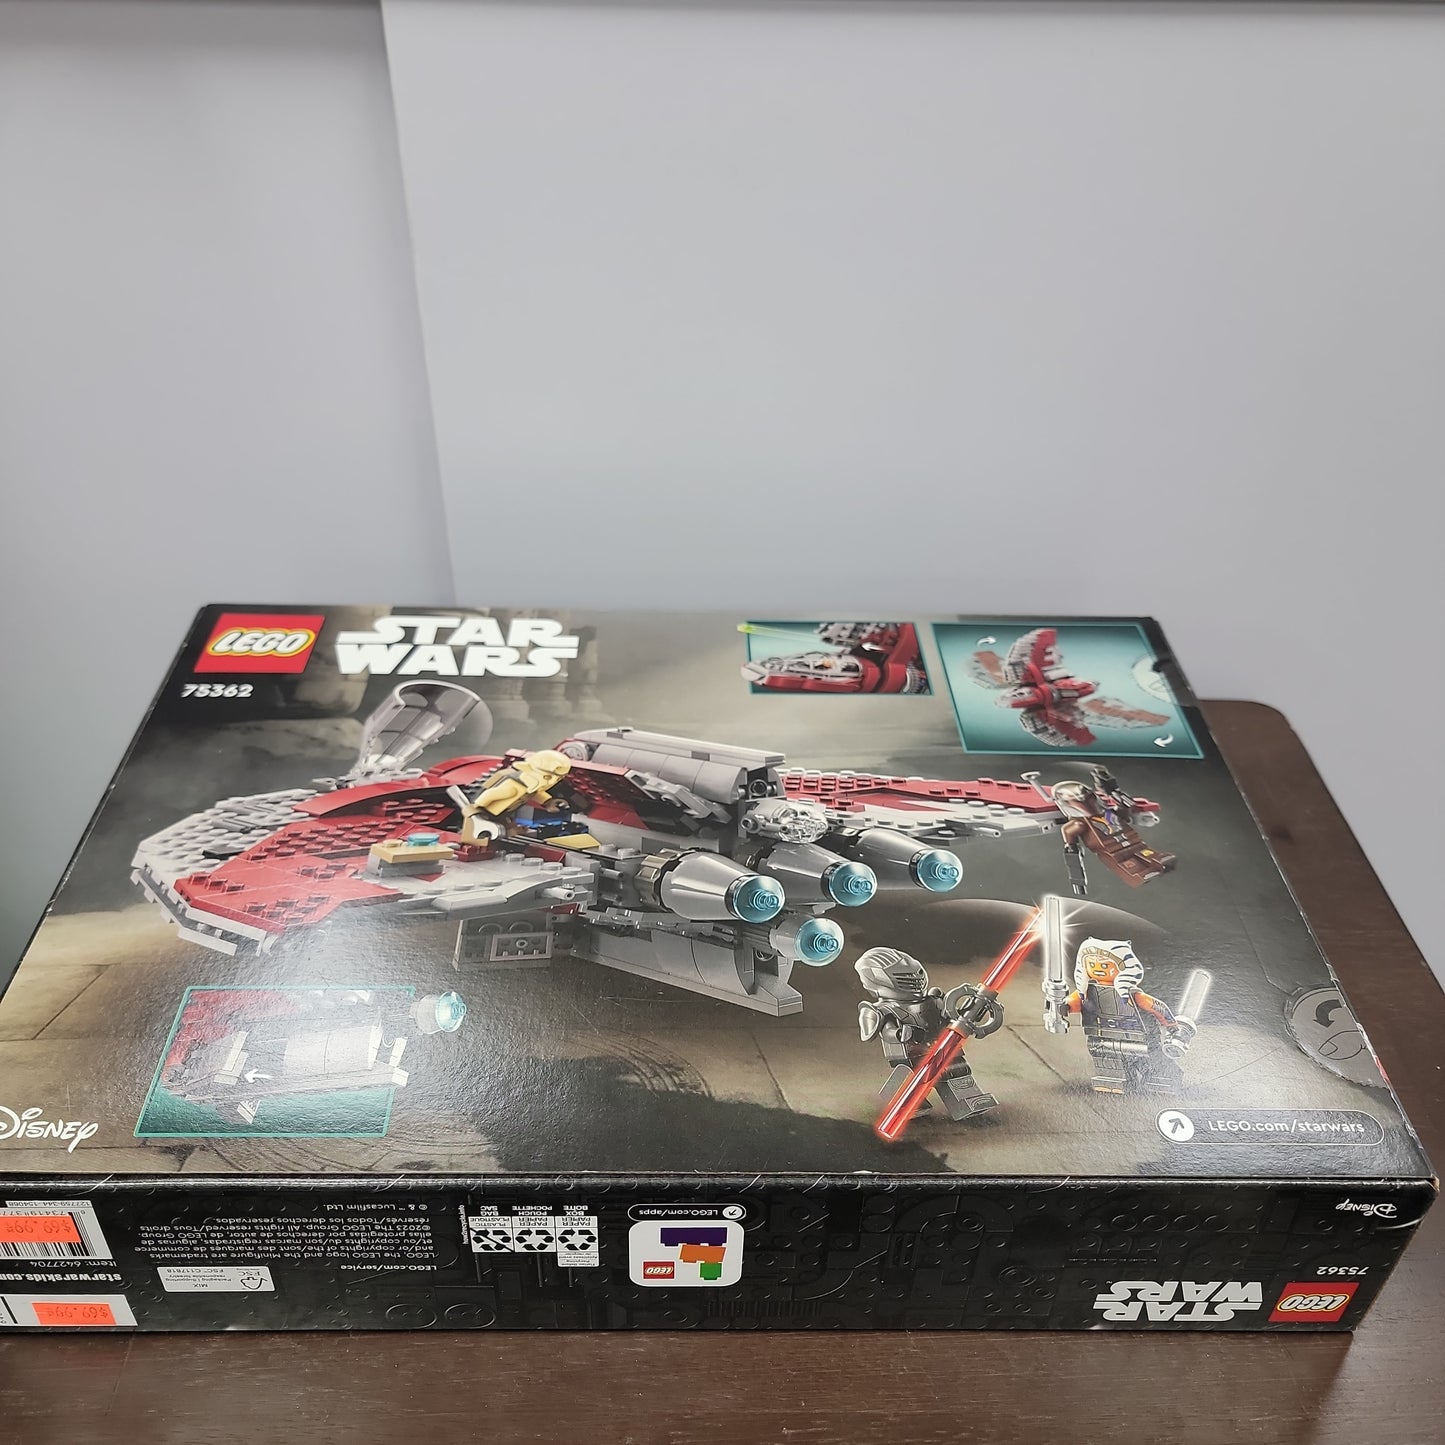 Star Wars Ahsoka Tano's T-6 Jedi Shuttle Lego Set